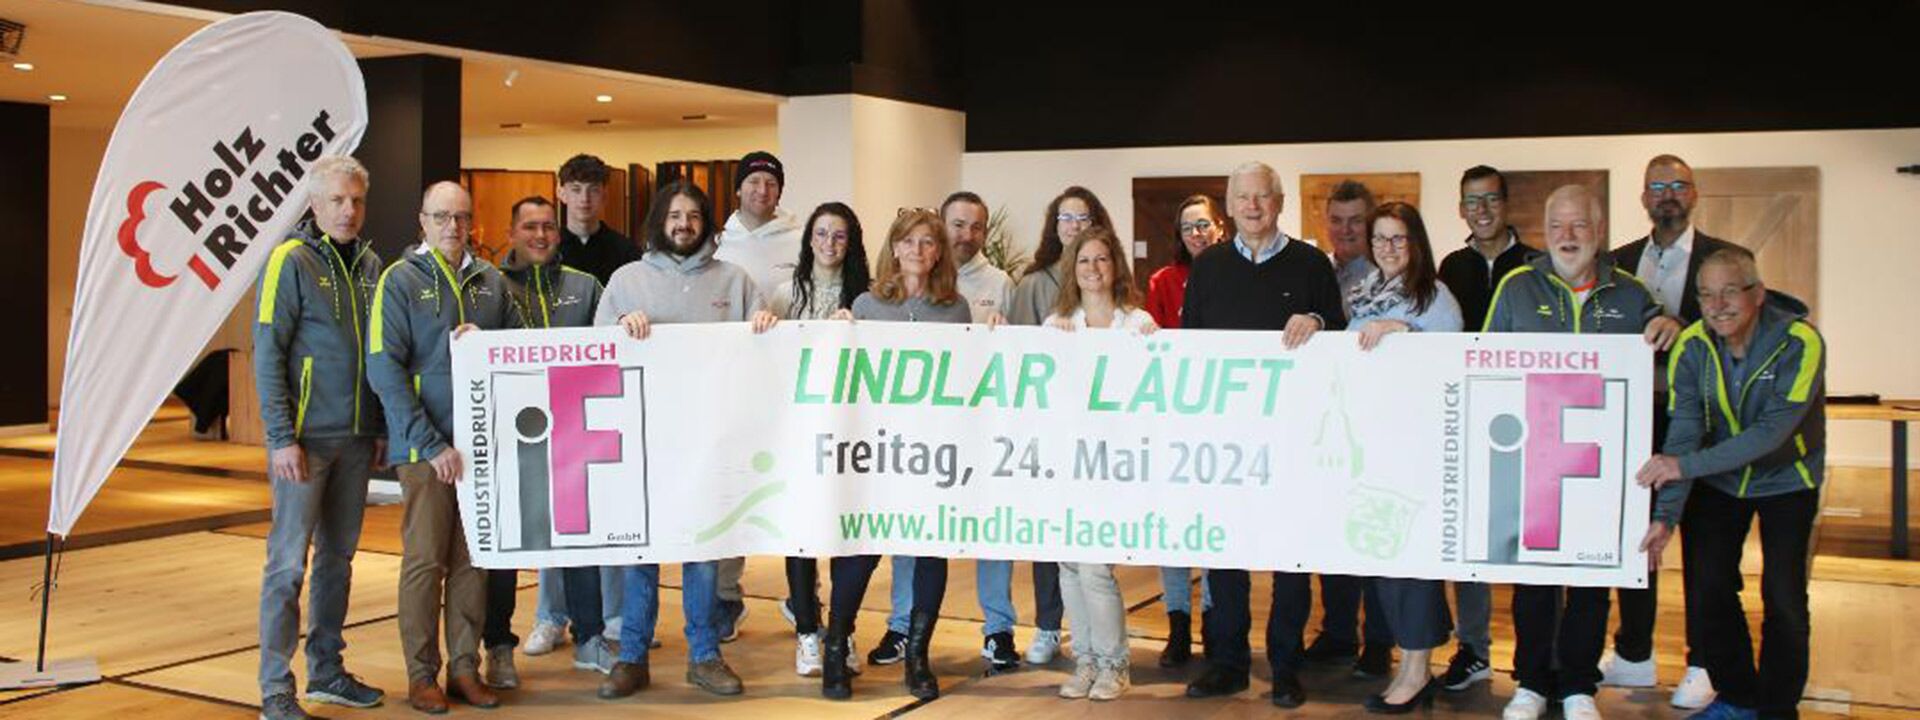 News Details "Lindlar läuft" e.V.